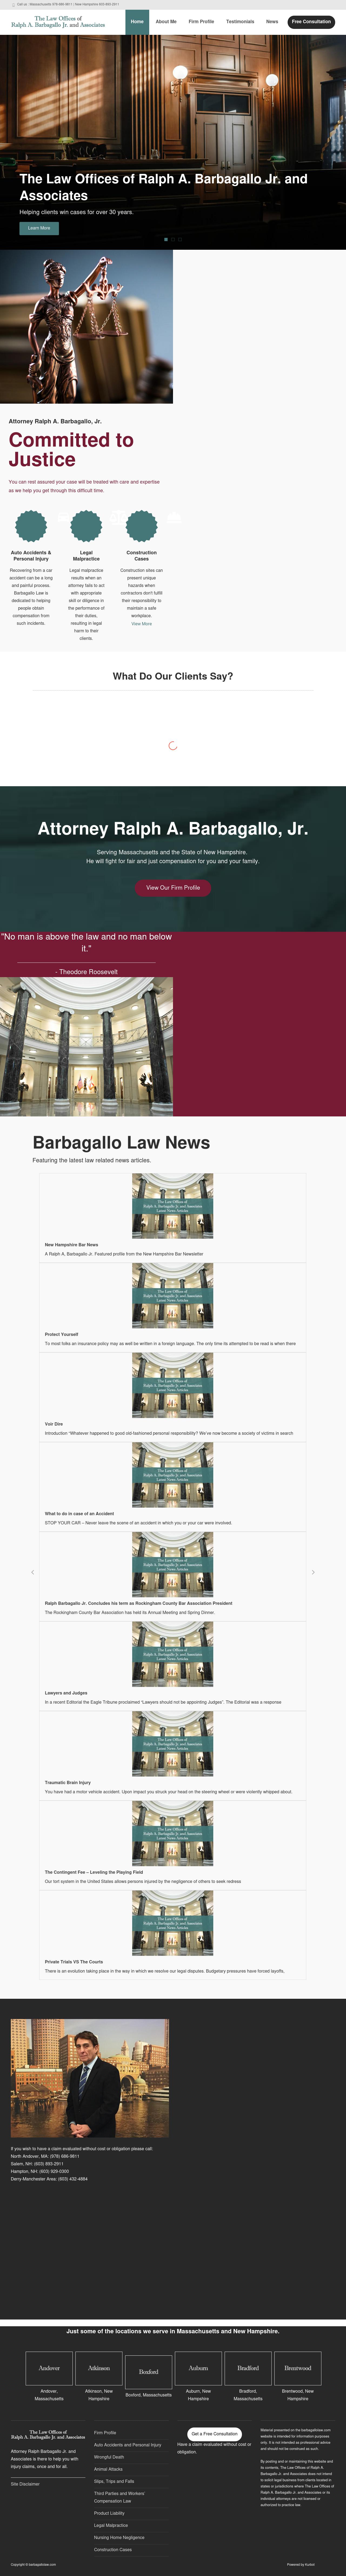 Ralph A. Barbagallo Jr. & Associates - Hampton NH Lawyers